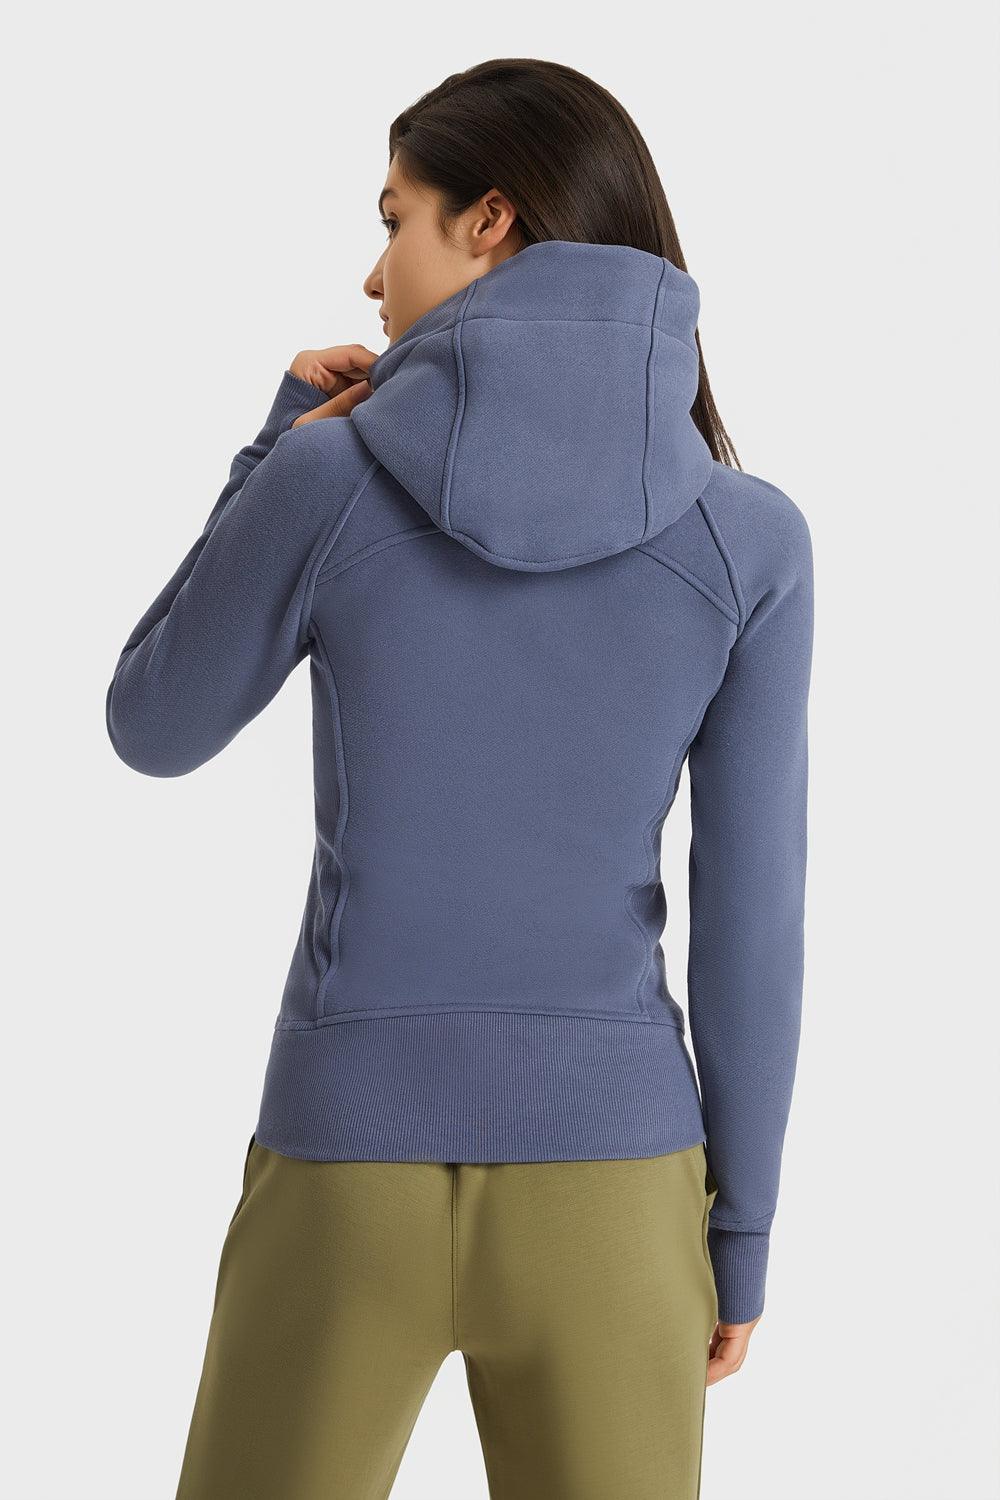 Zip Up Seam Detail Hooded Sports Jacket - BELLATRENDZ